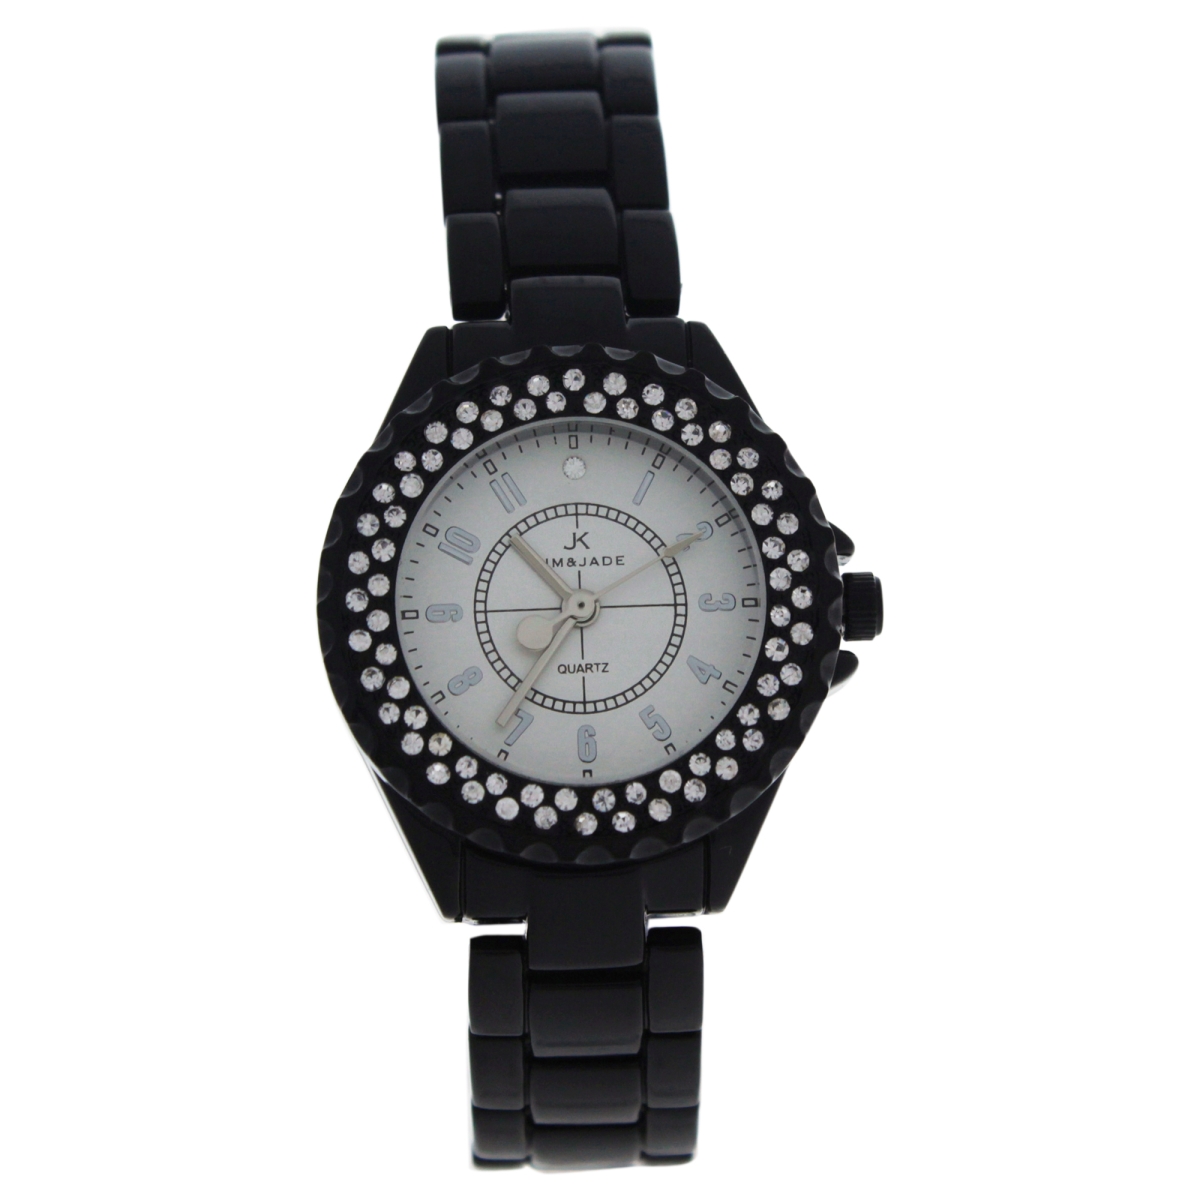 W-wat-1526 Black Stainless Steel Bracelet Watch For Women - 2033l-bs